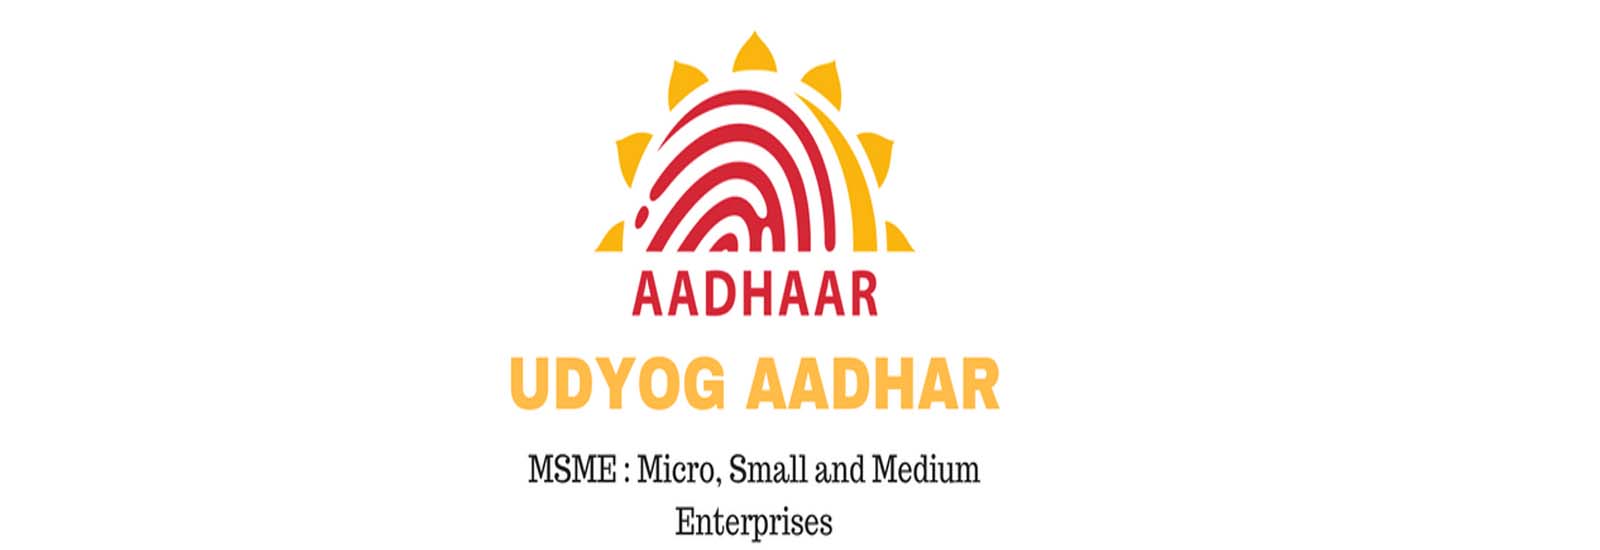 उद्योग आधार रजिस्ट्रेशन| Udyog Aadhaar MSME Registration | ऑनलाइन आवेदन